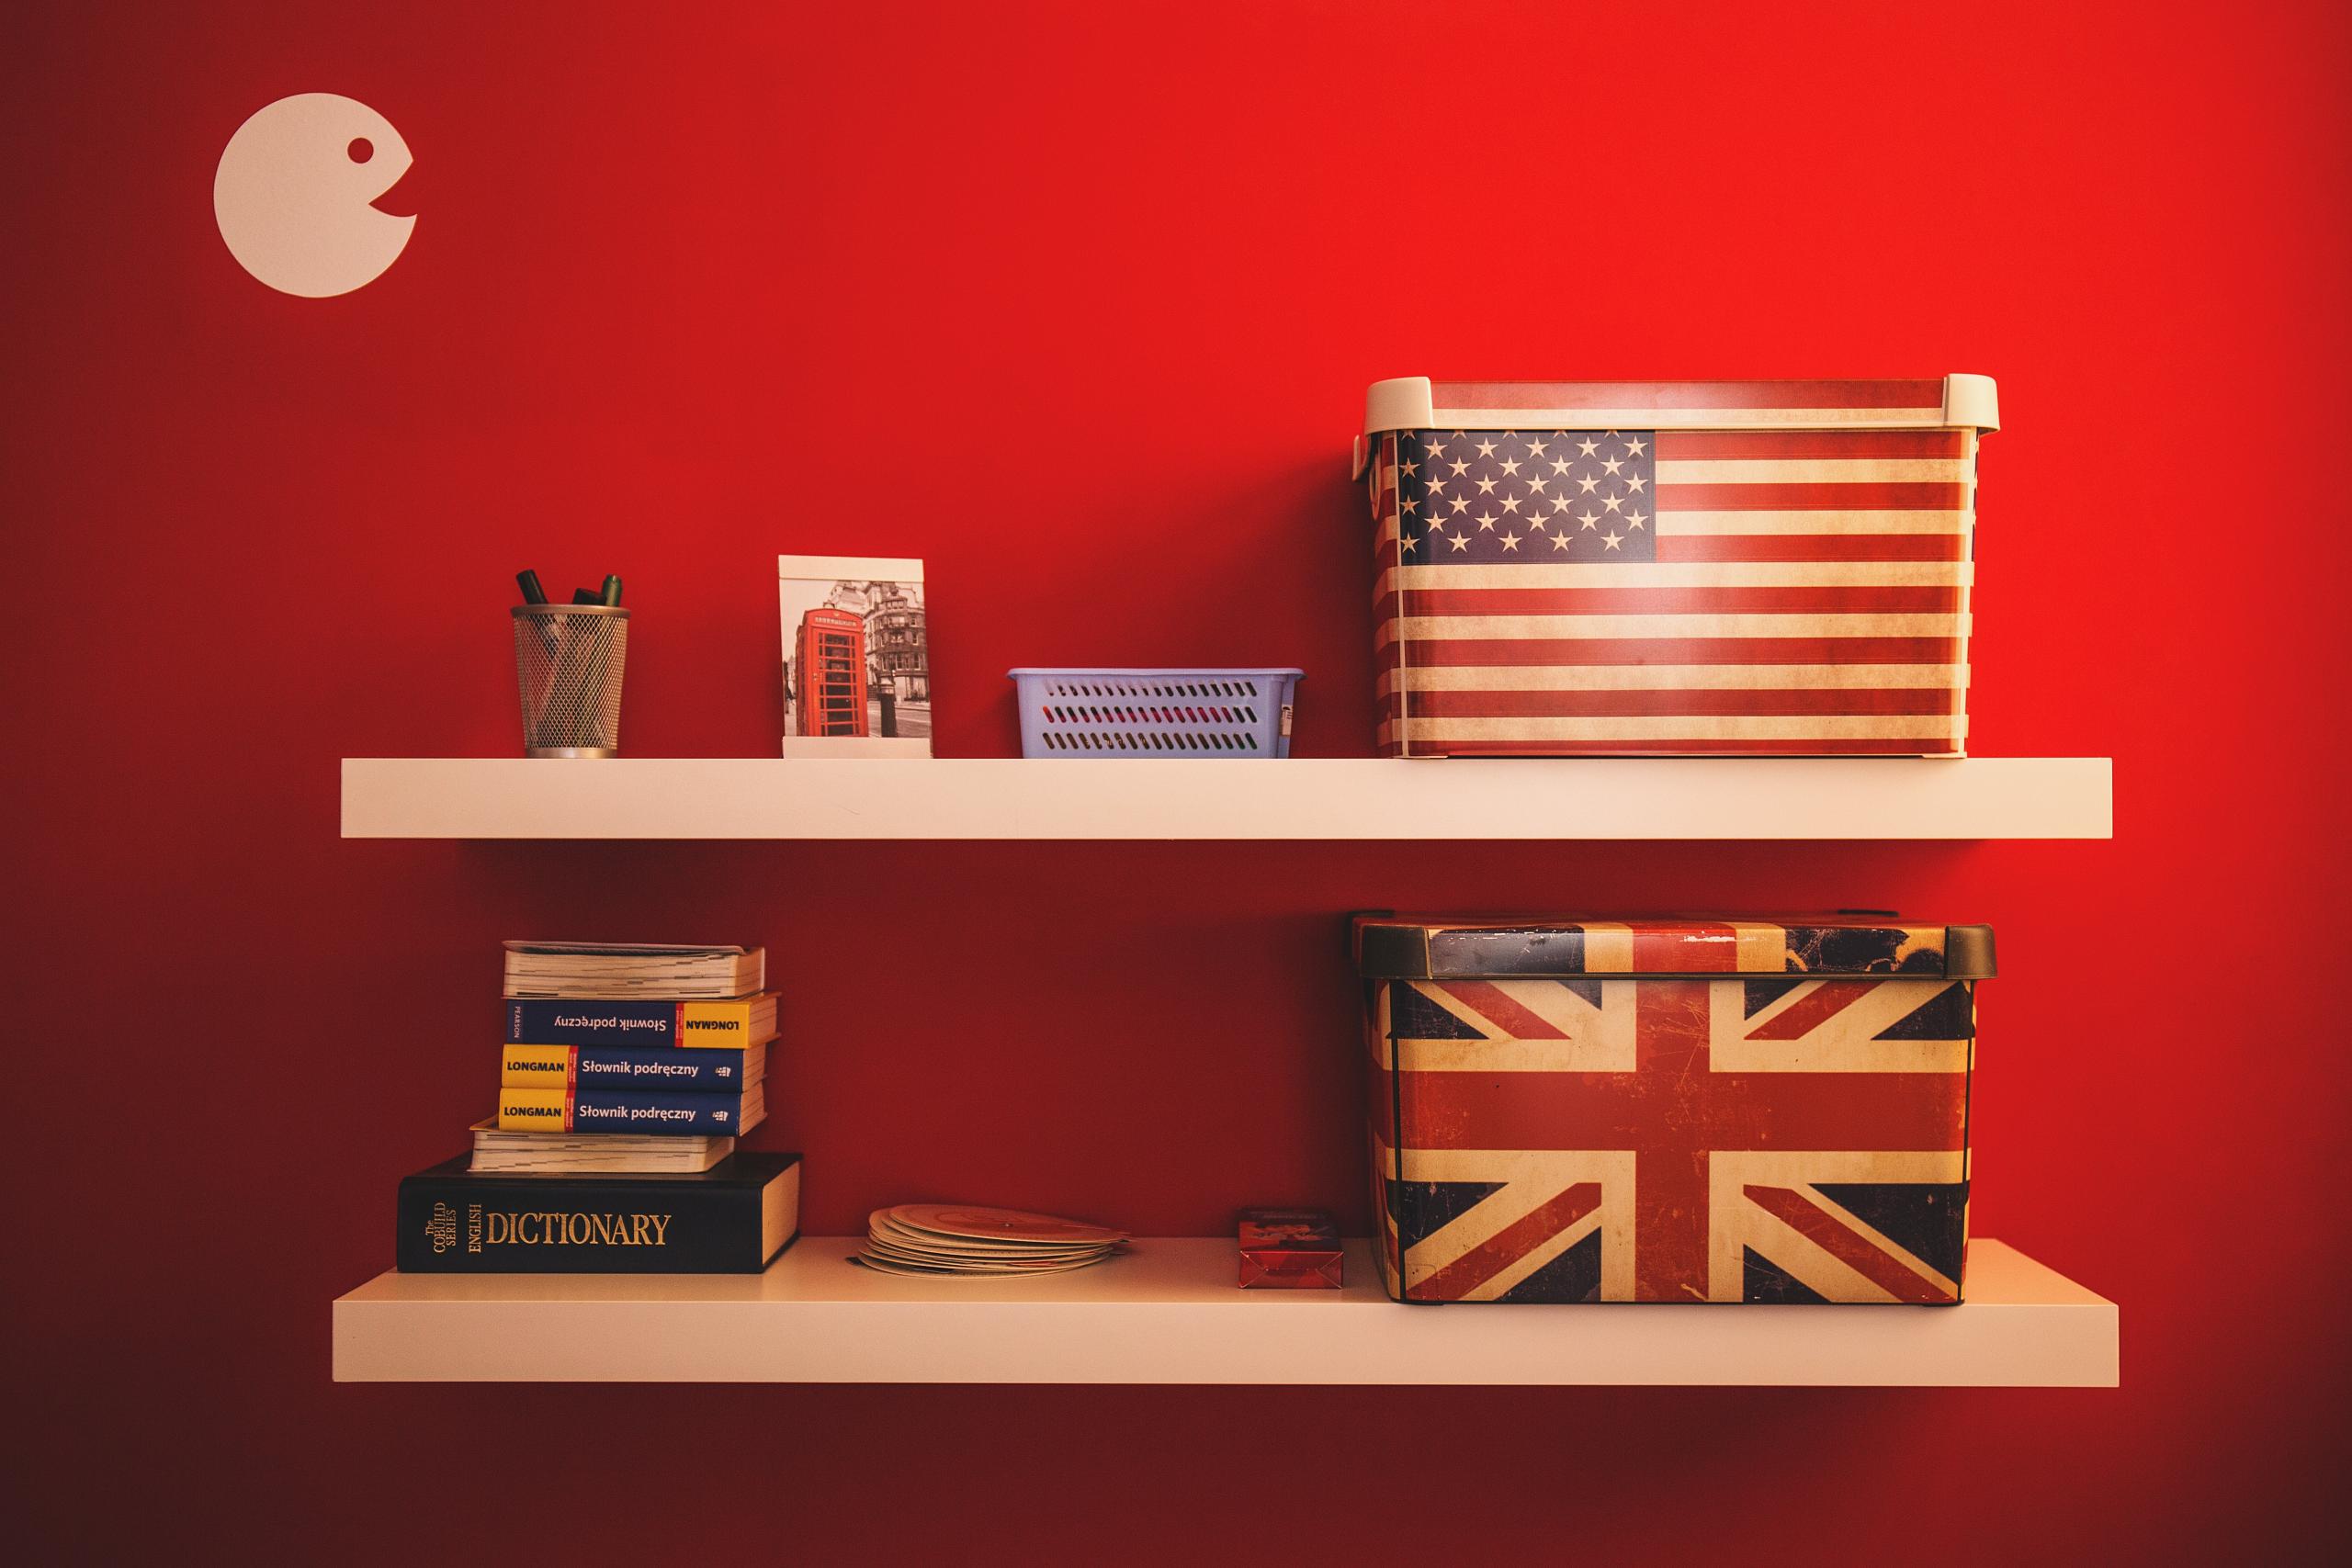 Zwei Wandregale, auf denen Schachteln stehen, die eine ist mit der amerikanischen, die andere mit der englischen Fahne bedruckt. Daneben sind Wörterbücher gestapelt und Schreibsachen. Die Wand ist rot gestrichen.